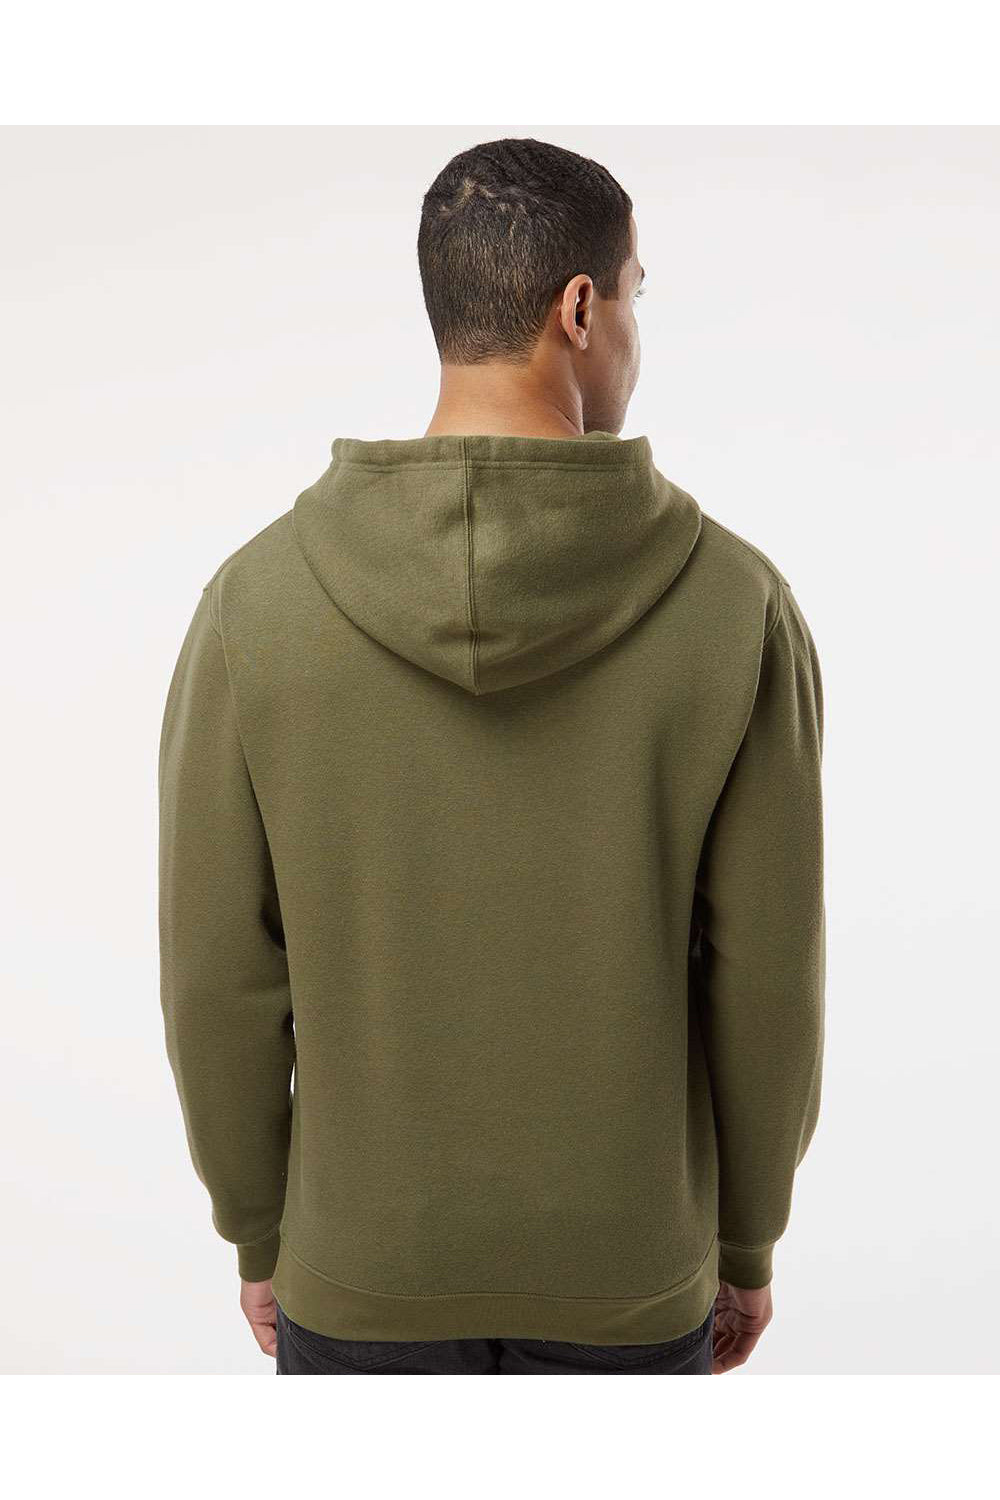 LAT 6926 Mens Elevated Fleece Basic Hooded Sweatshirt Hoodie Military Green Model Back